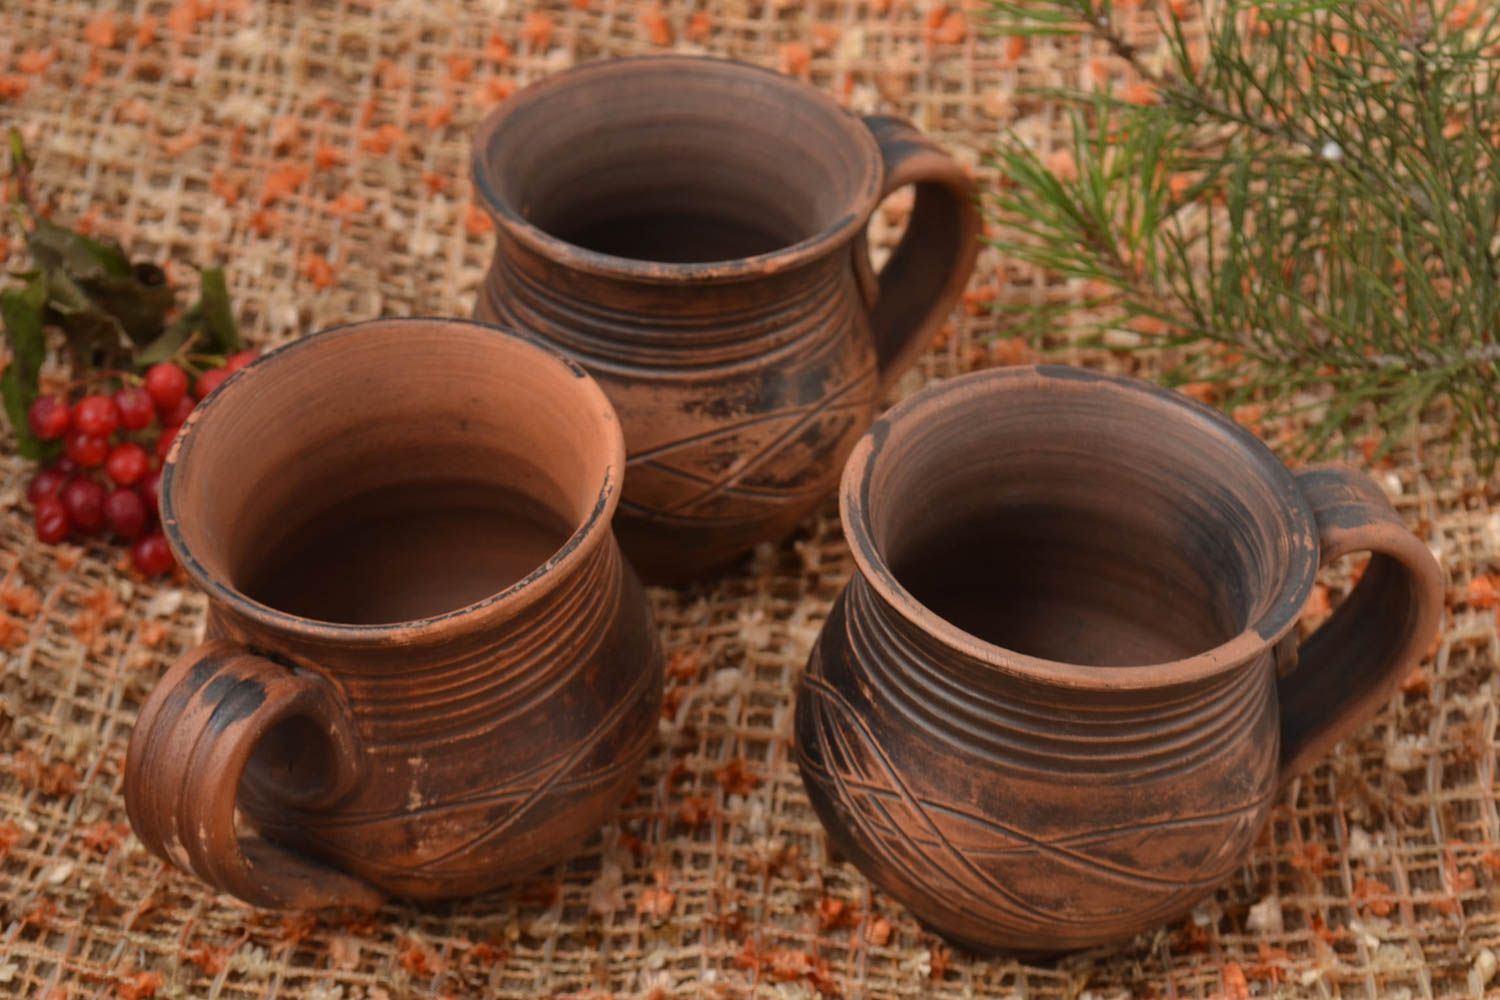 Чайные чашки ручной работы глиняные чашки оригинальные кружки для чая 3 штуки фото 1